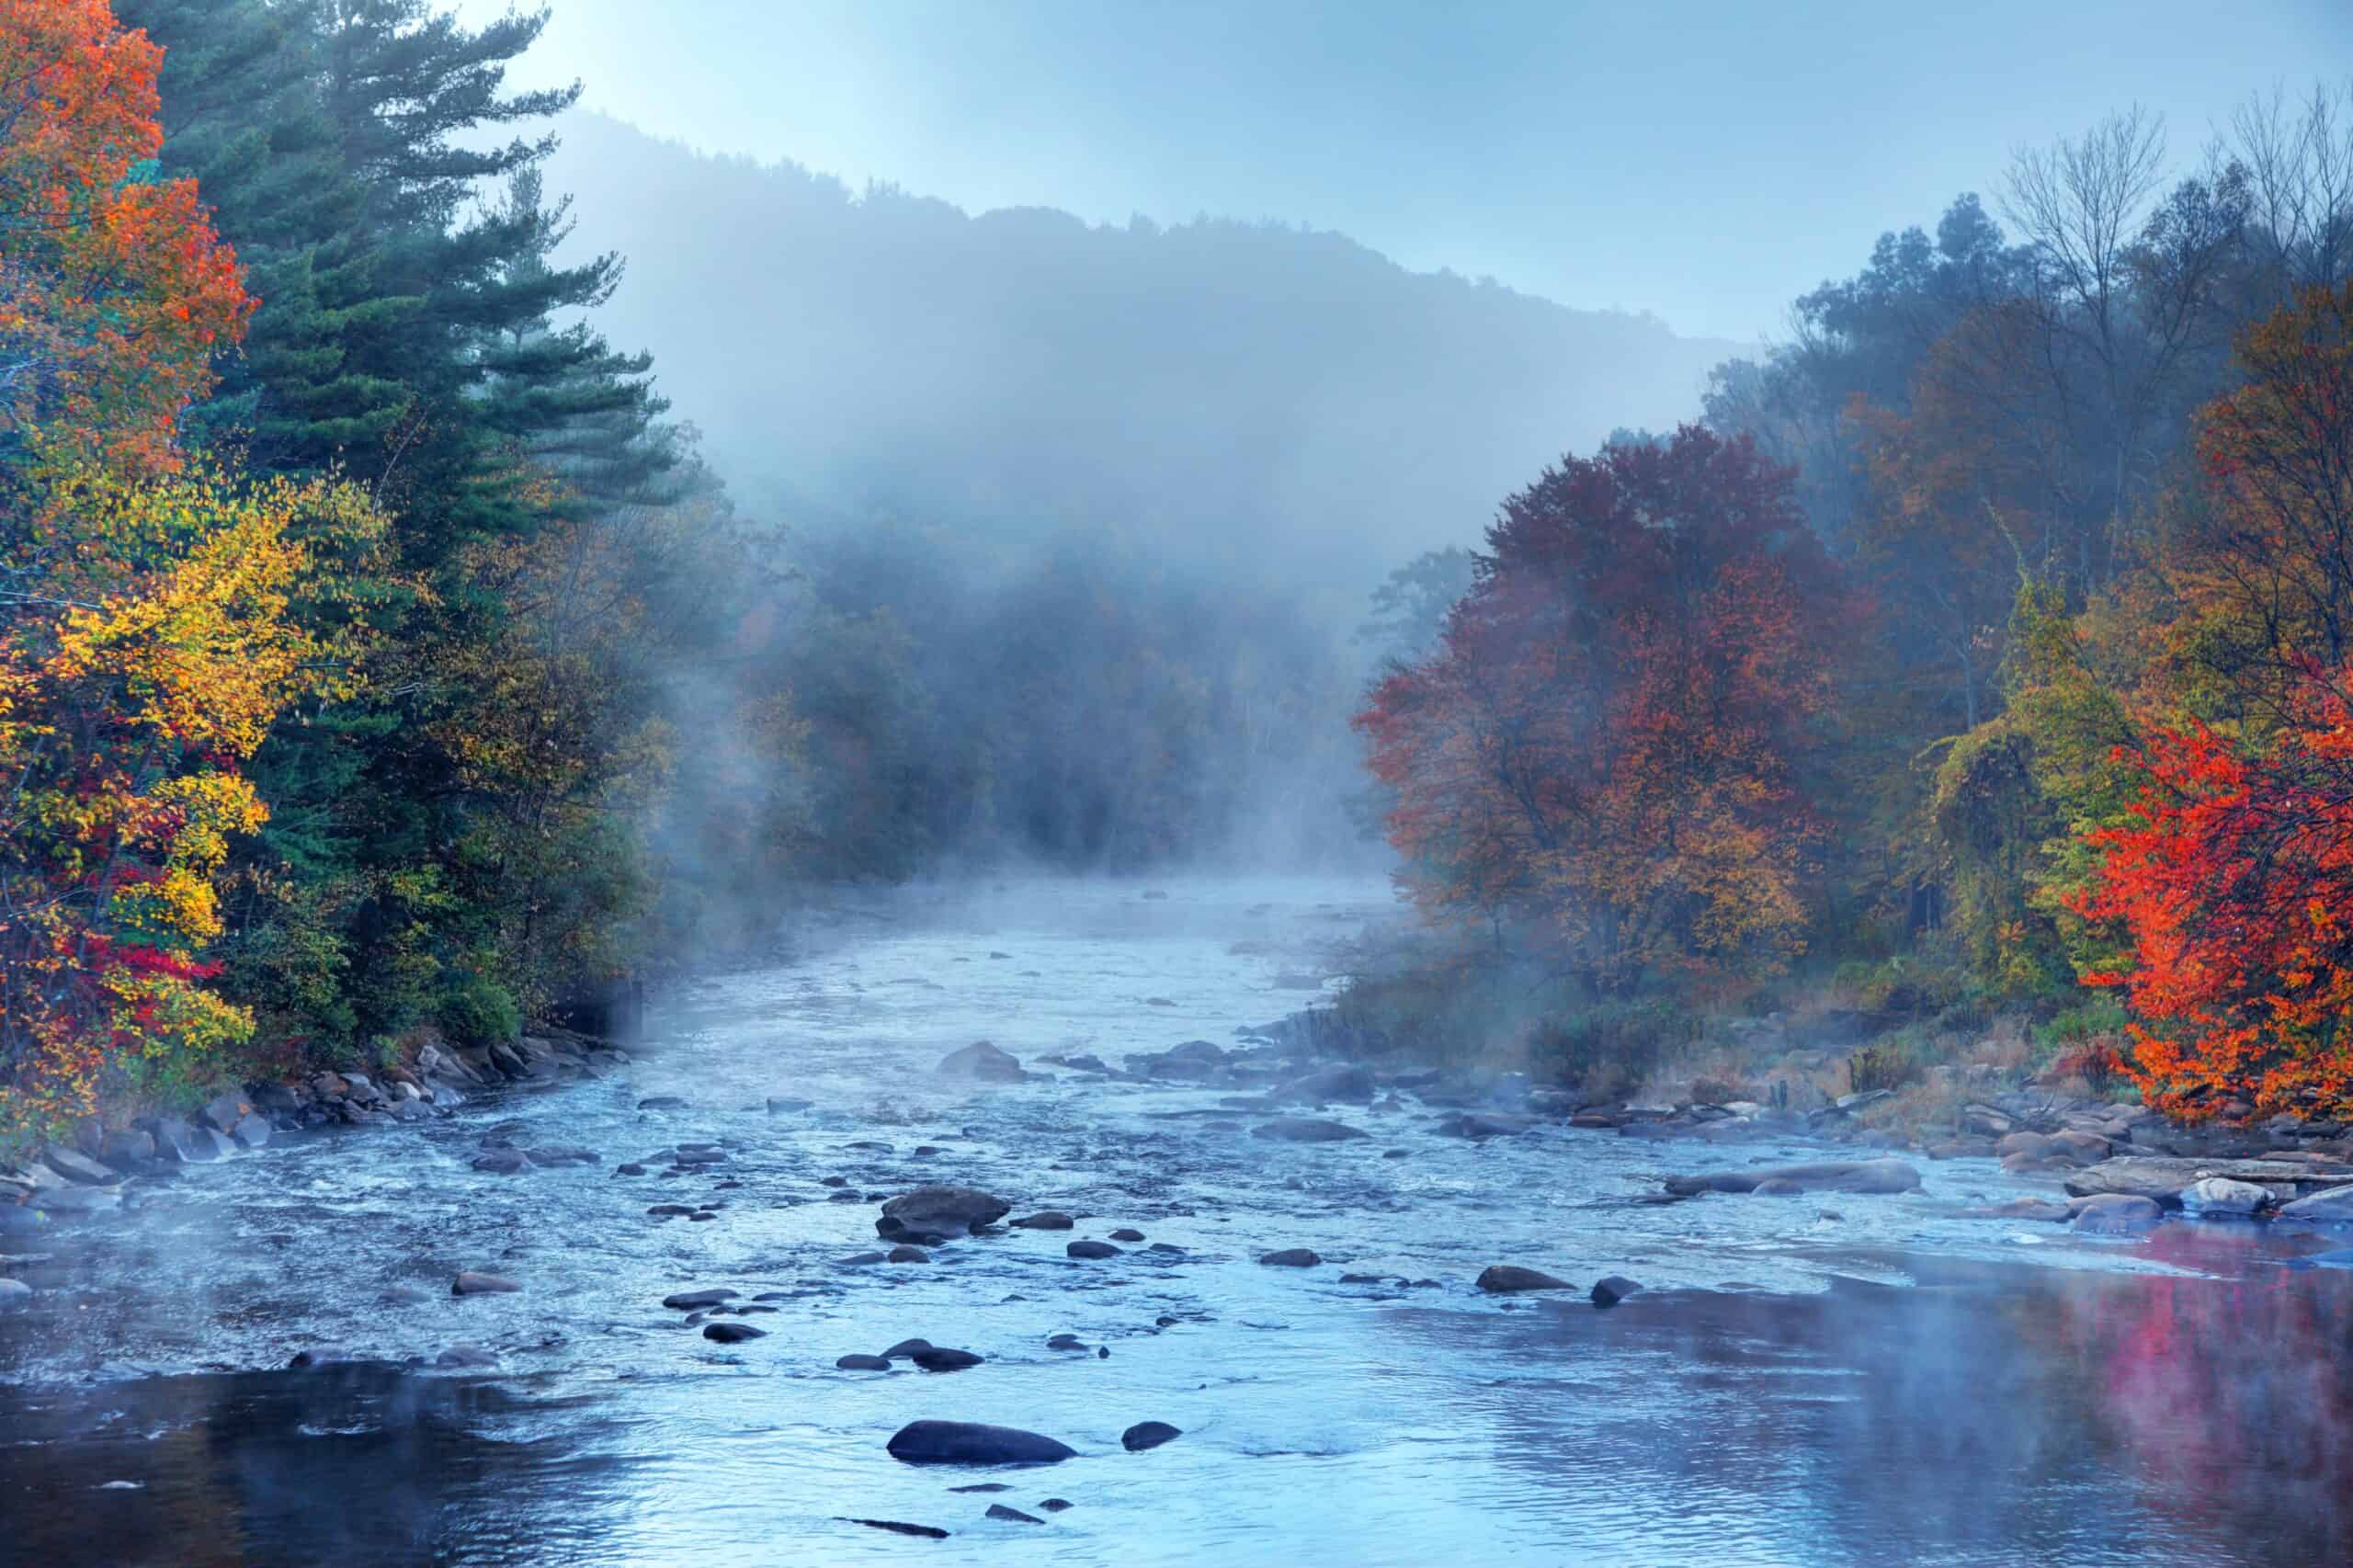 Greenfield, Massachusetts | Autumn foliage along the Millers River near Greenfield, Massachusetts